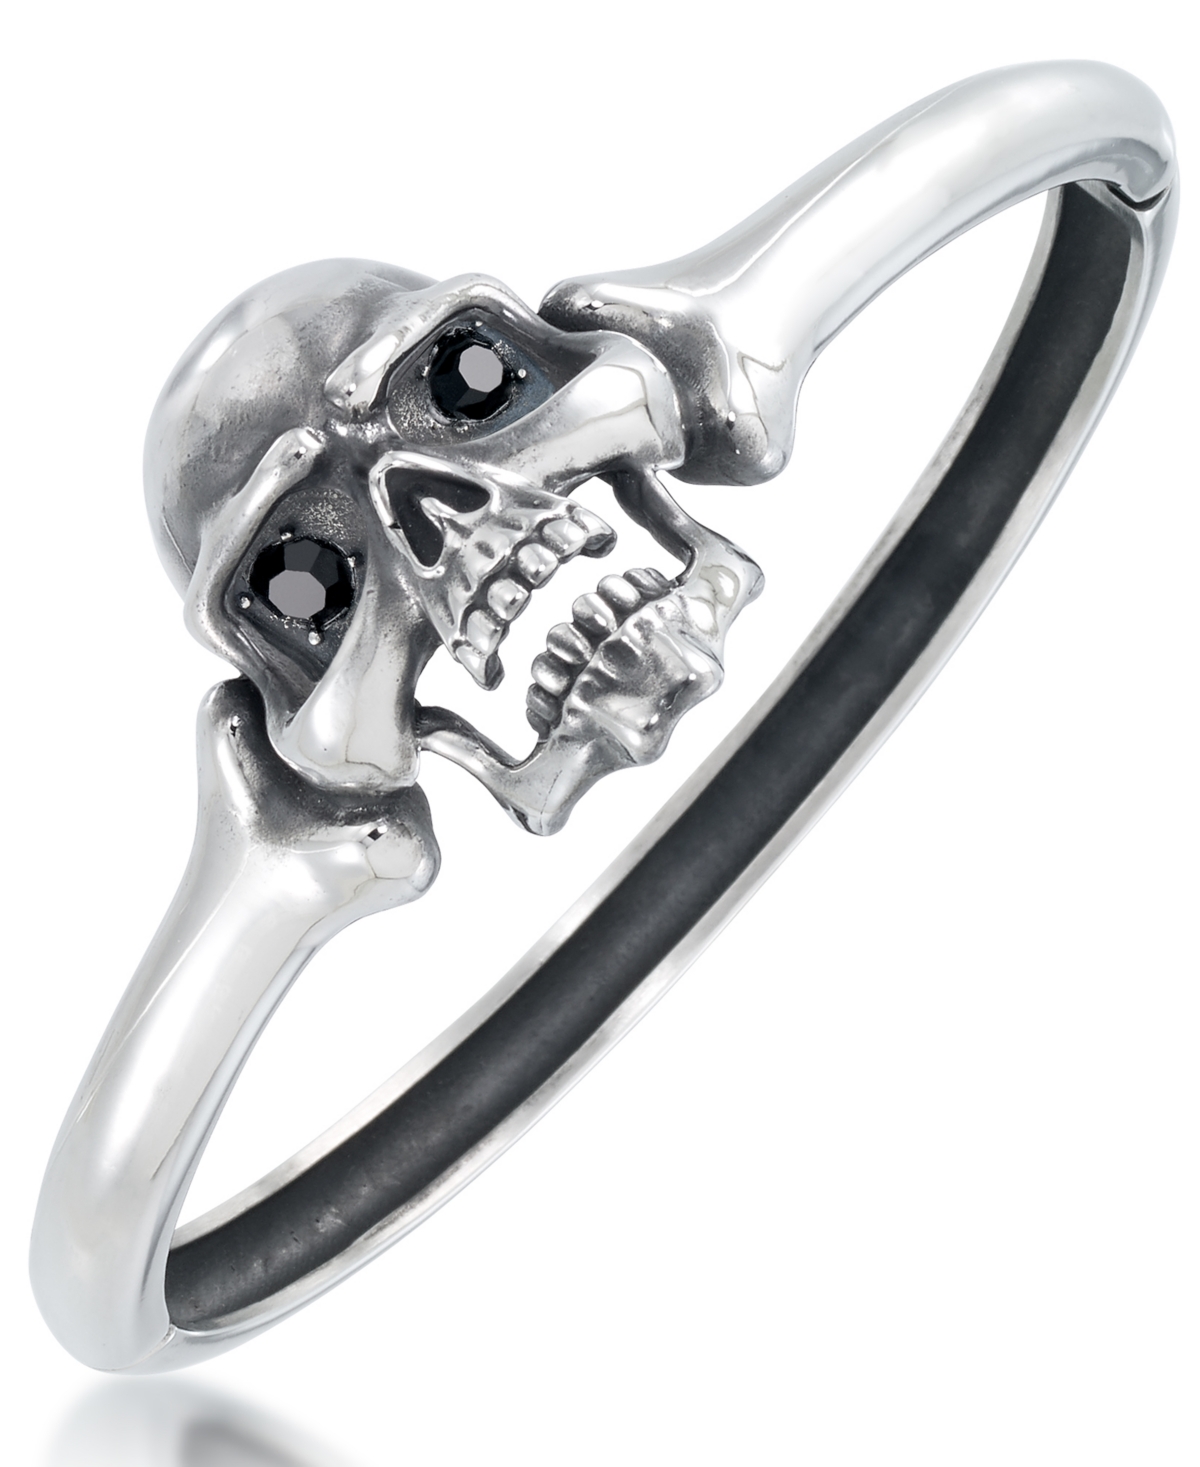 Men's Black Cubic Zirconia Skull Bangle Bracelet in Stainless Steel - Stainless Steel